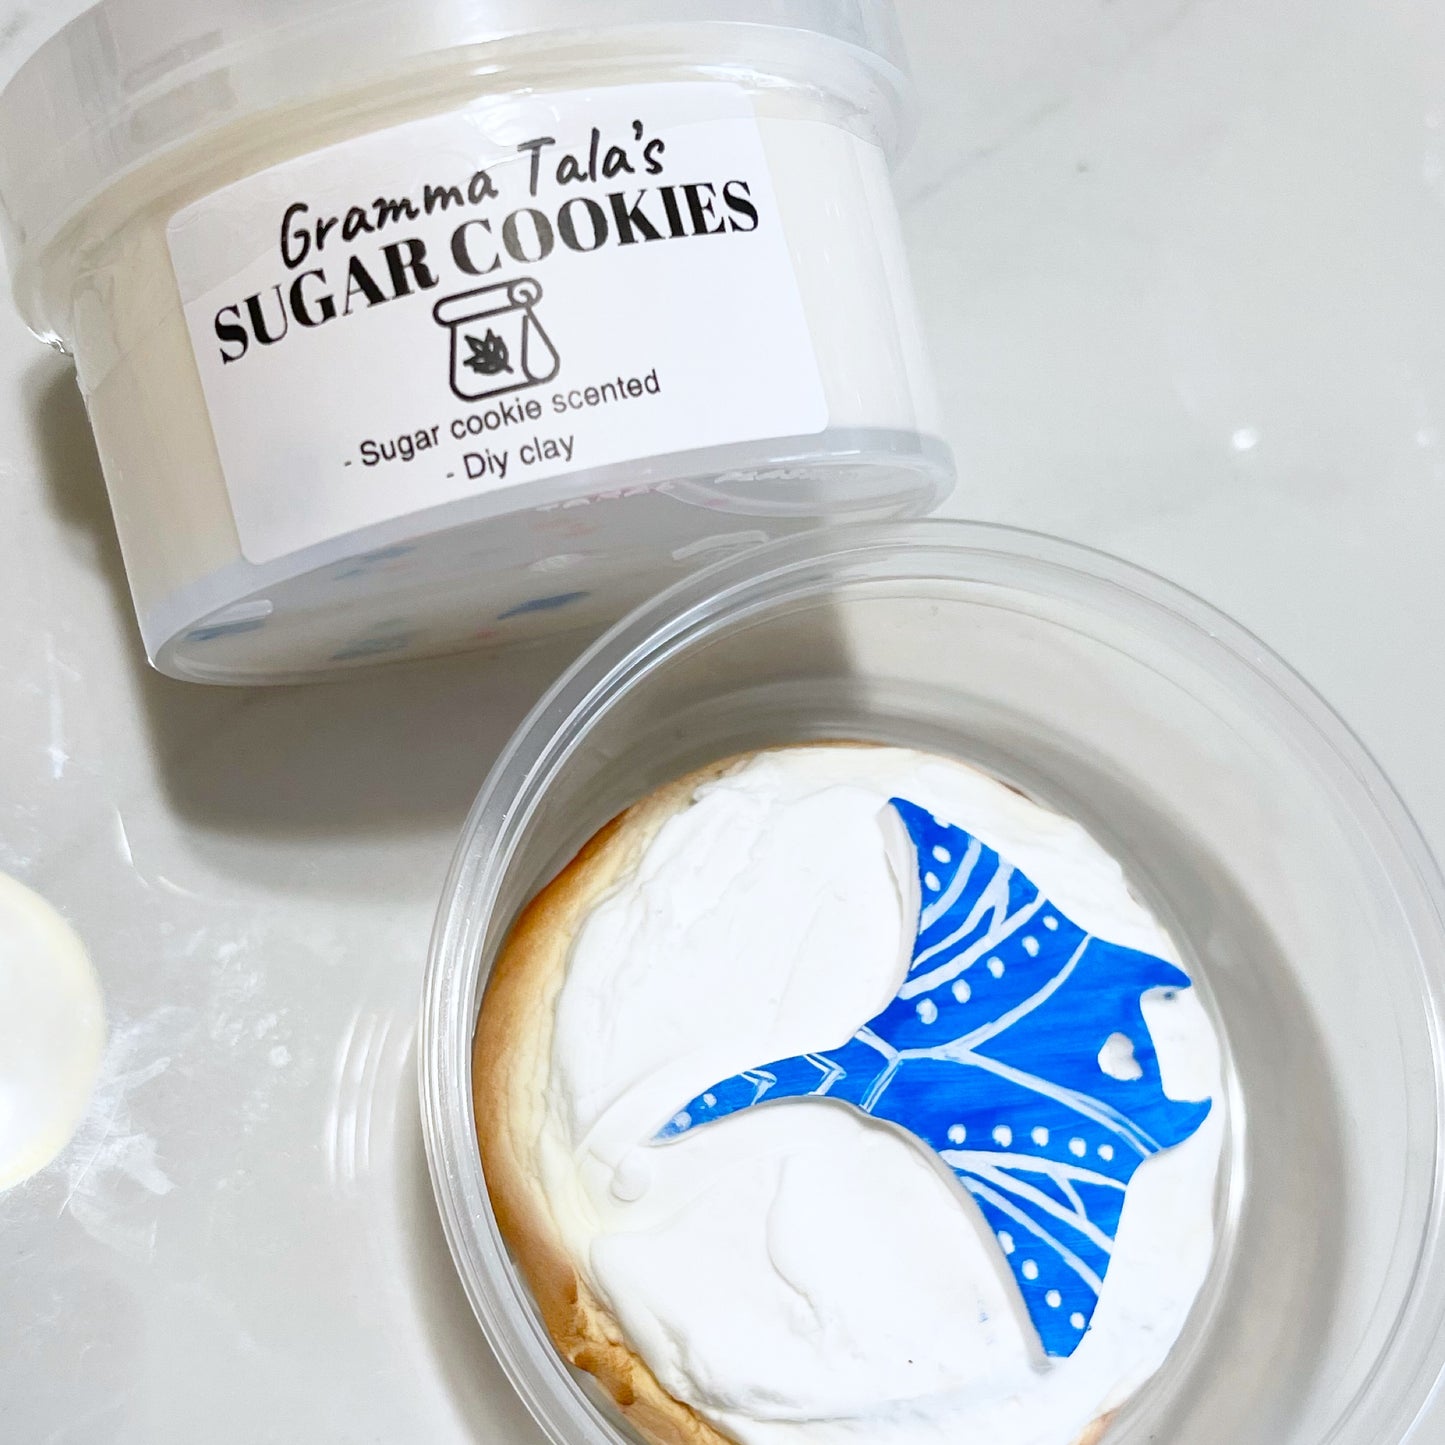 Gramma Tala’s Sugar Cookies